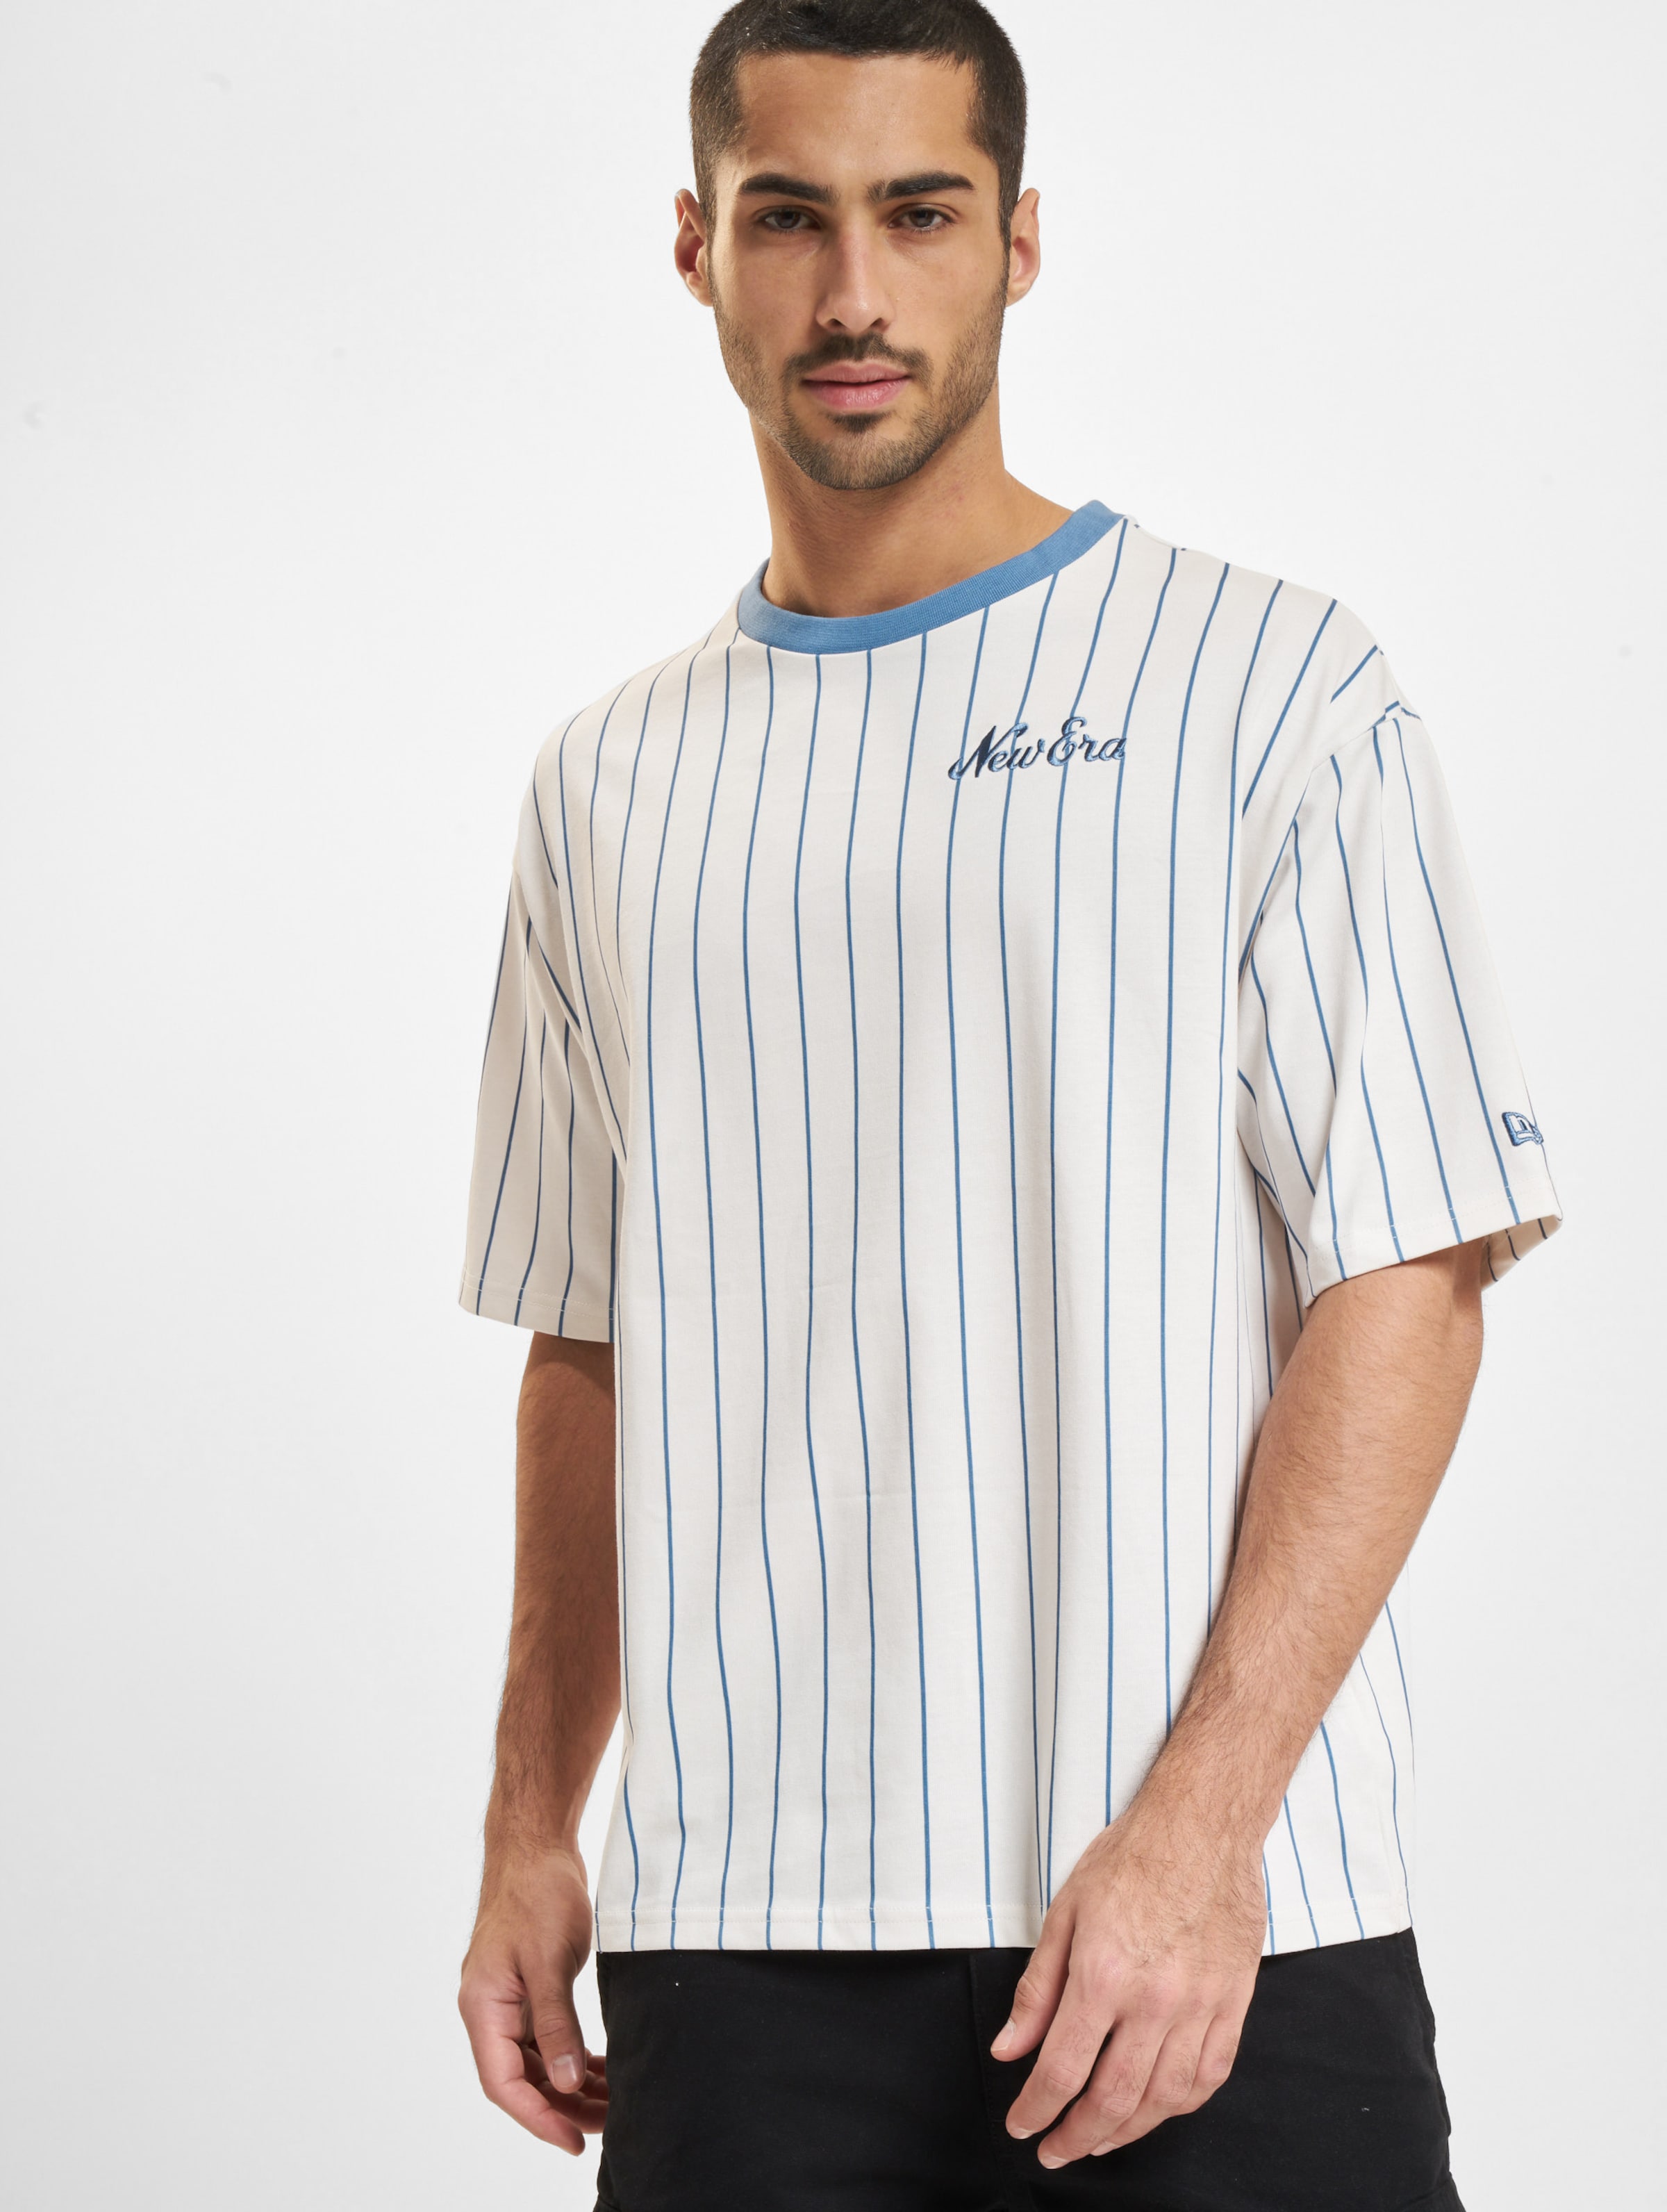 New Era Pinstripe OS T-Shirts Männer,Unisex op kleur wit, Maat M